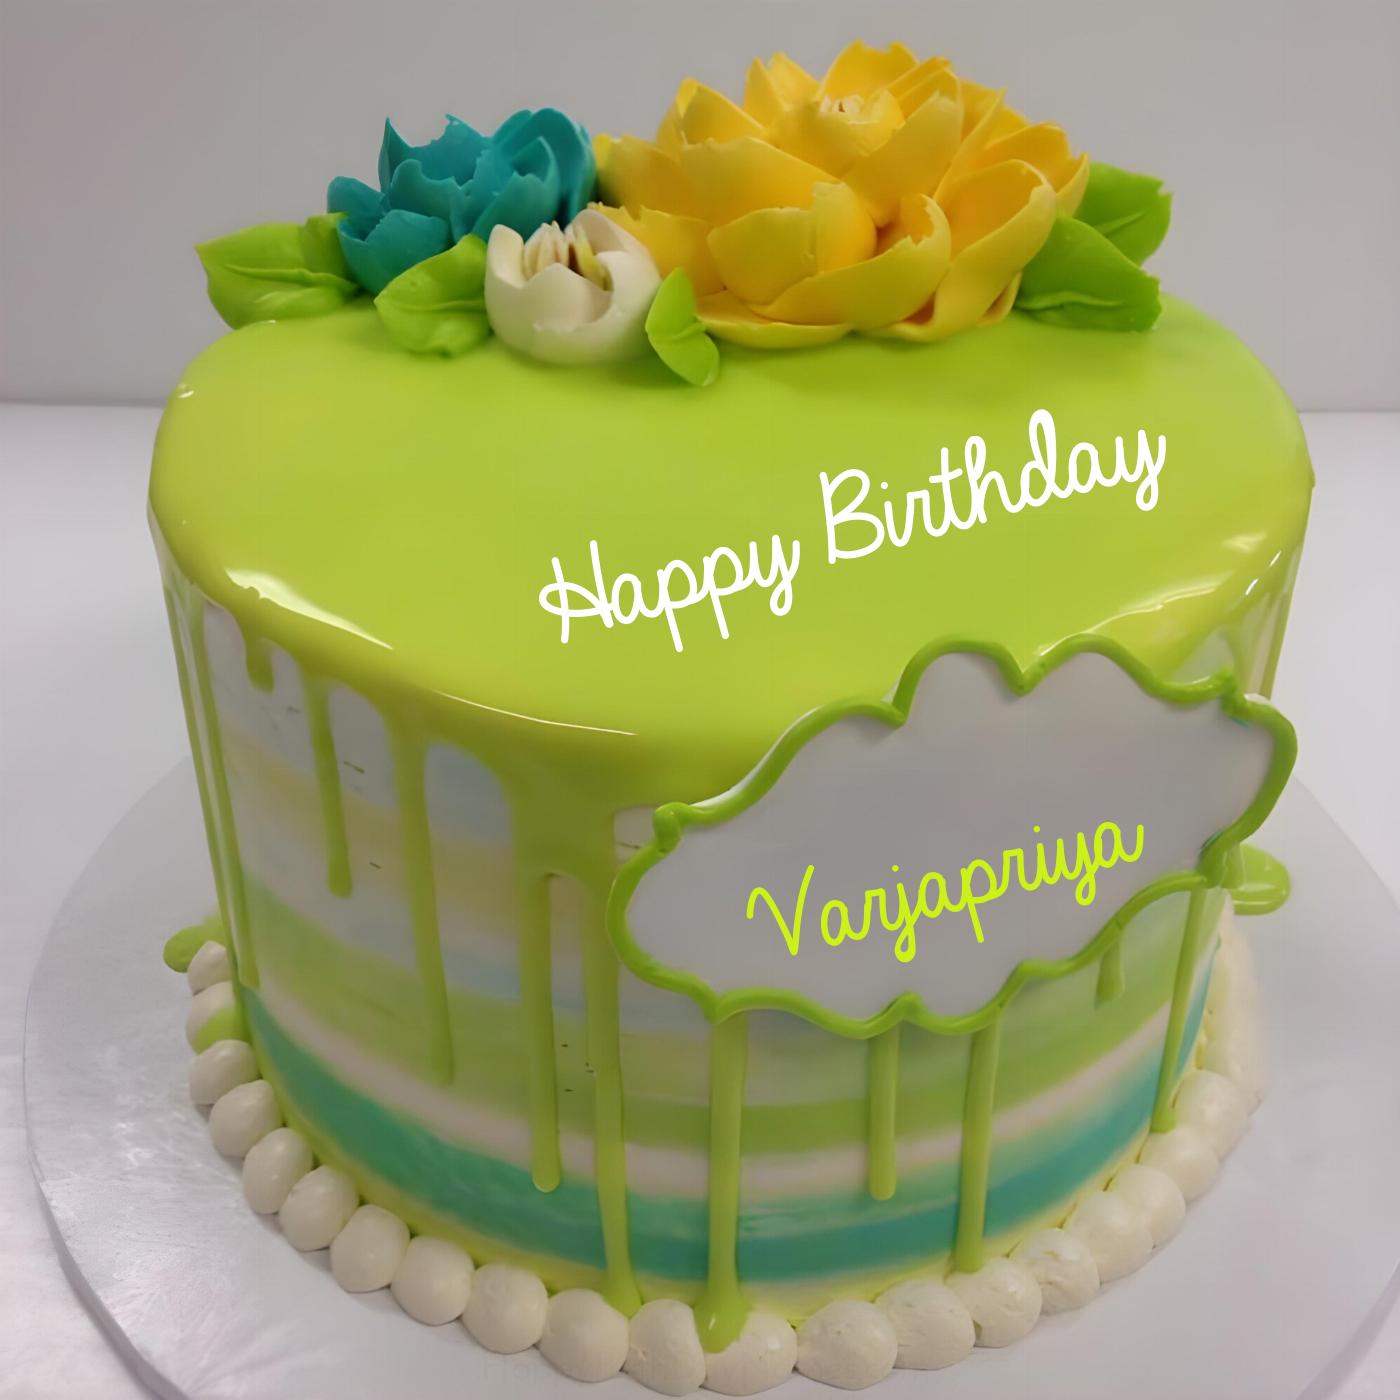 Happy Birthday Varjapriya Green Flowers Cake